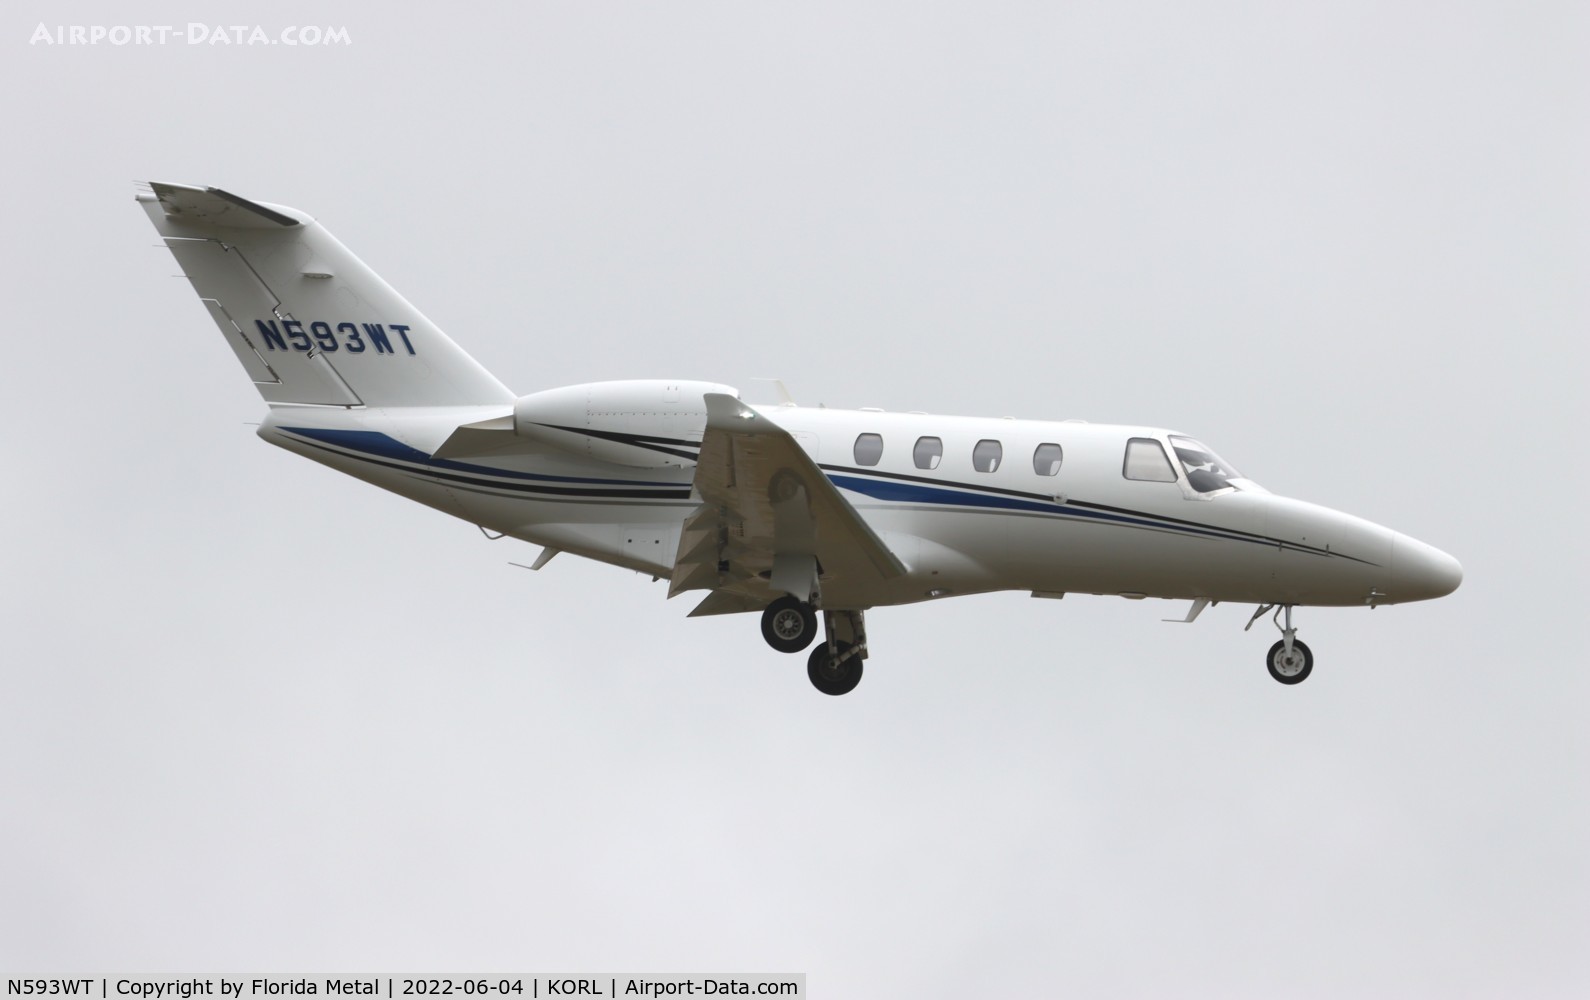 N593WT, 2014 Cessna 525 Citation M2 C/N 525-0839, C525M zx